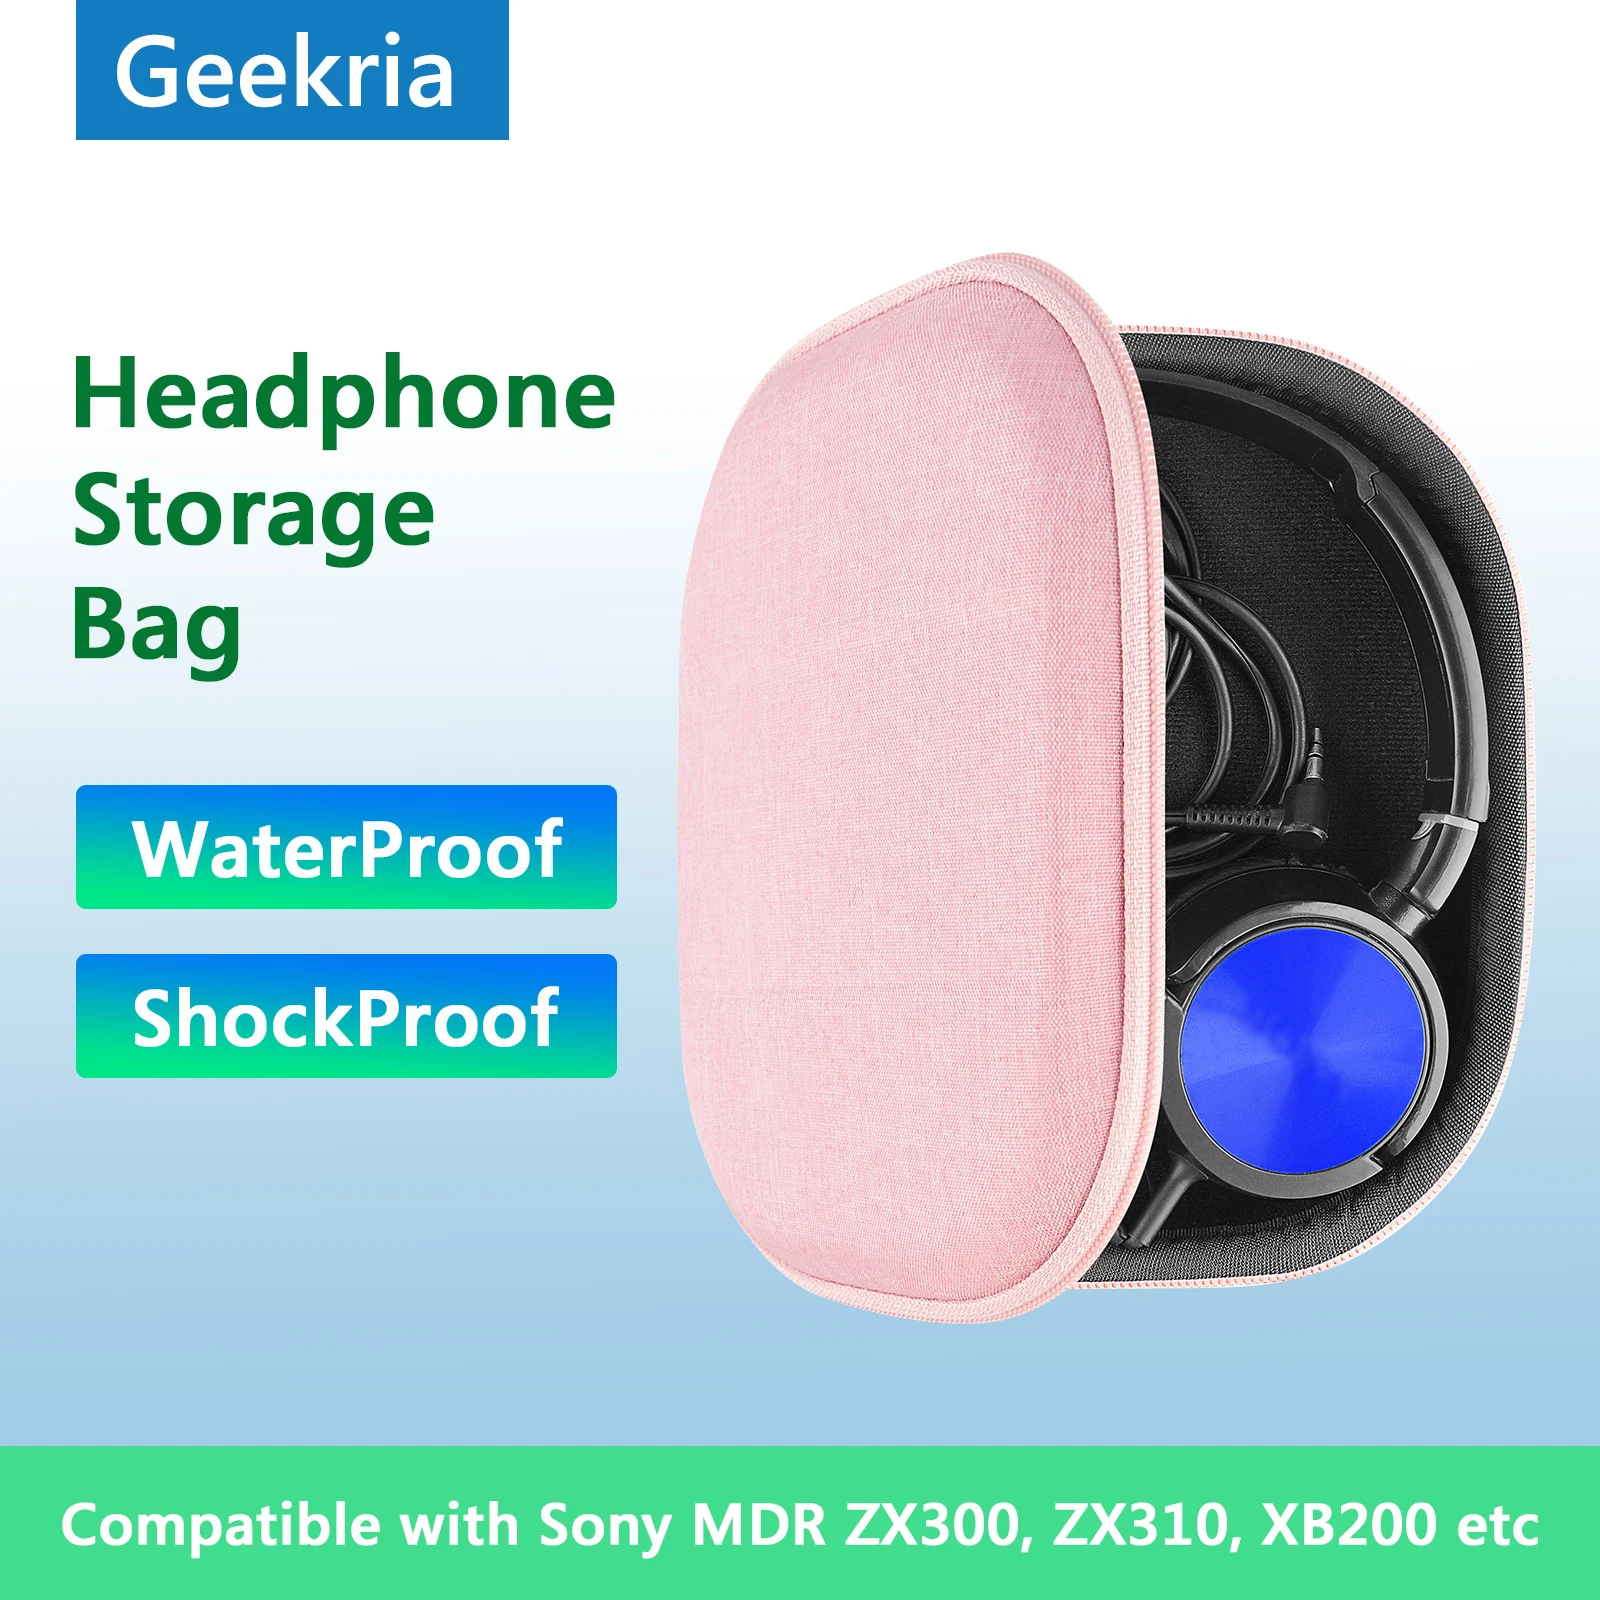 

Чехол для наушников Geekria для Sony MDR ZX300 ZX310 ZX100 жесткий портативный чехол для наушников Bluetooth гарнитуры для хранения аксессуаров